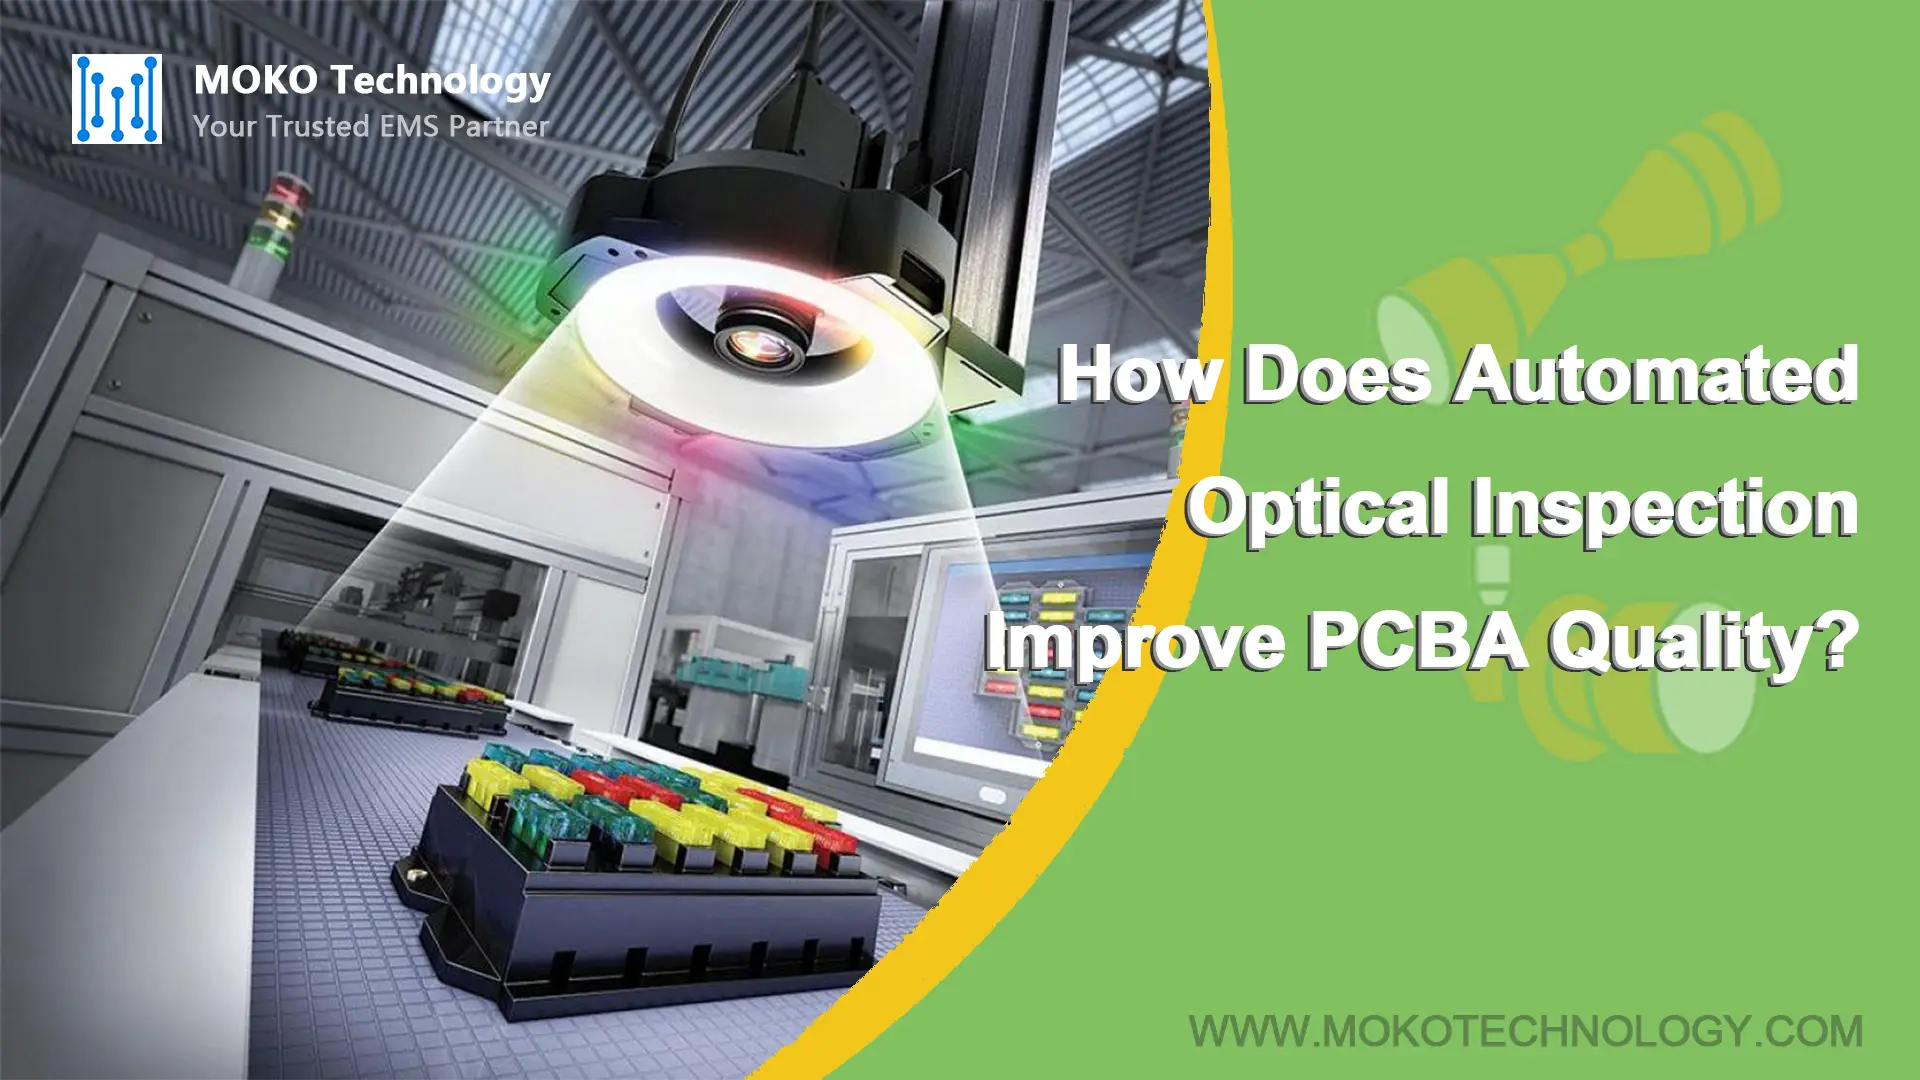 Comment l'inspection optique automatisée améliore-t-elle la qualité des PCBA